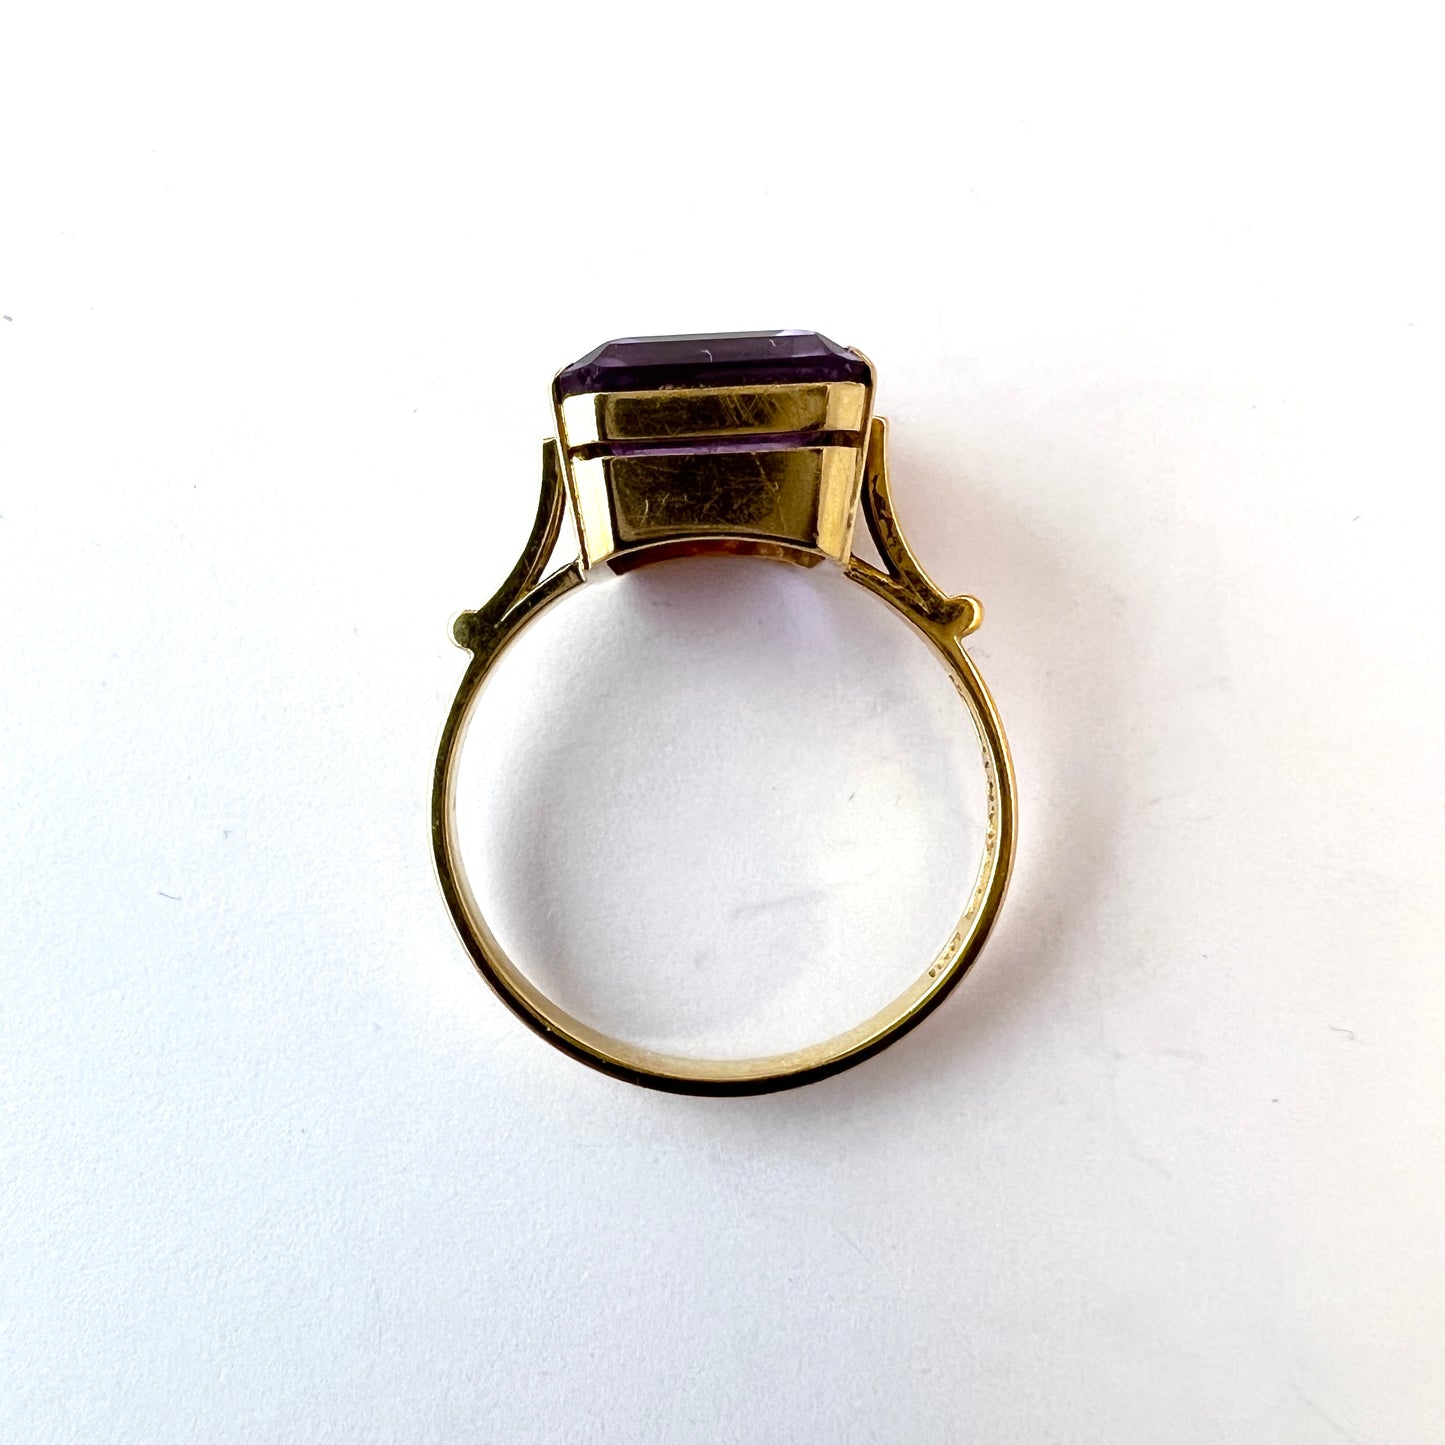 Örns Juvelatelje, Sweden 1964. Vintage 18k Gold Amethyst Ring.